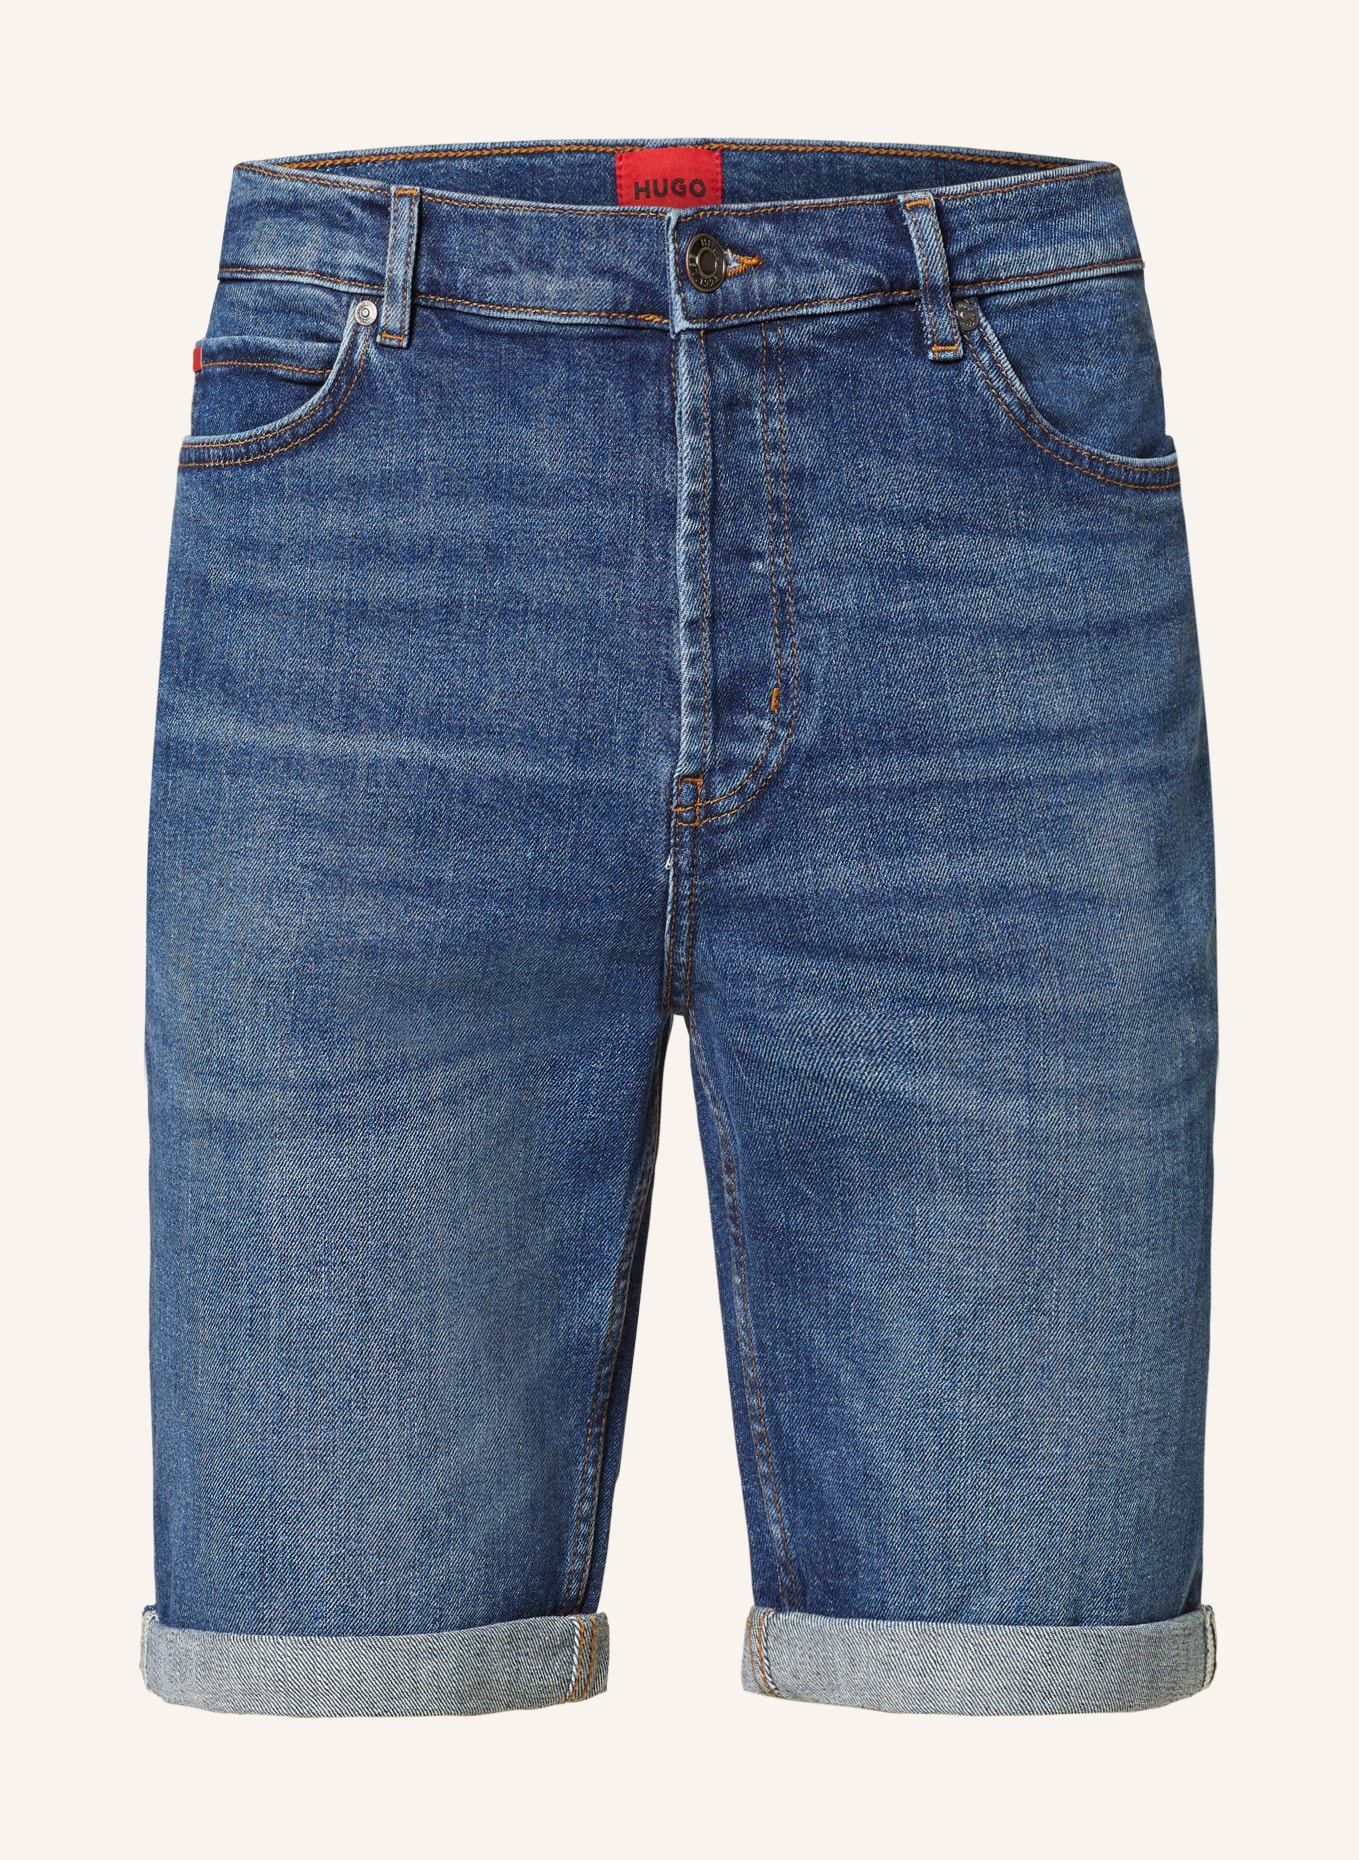 HUGO Denim shorts 634 tapered fit, Color: 420 MEDIUM BLUE (Image 1)